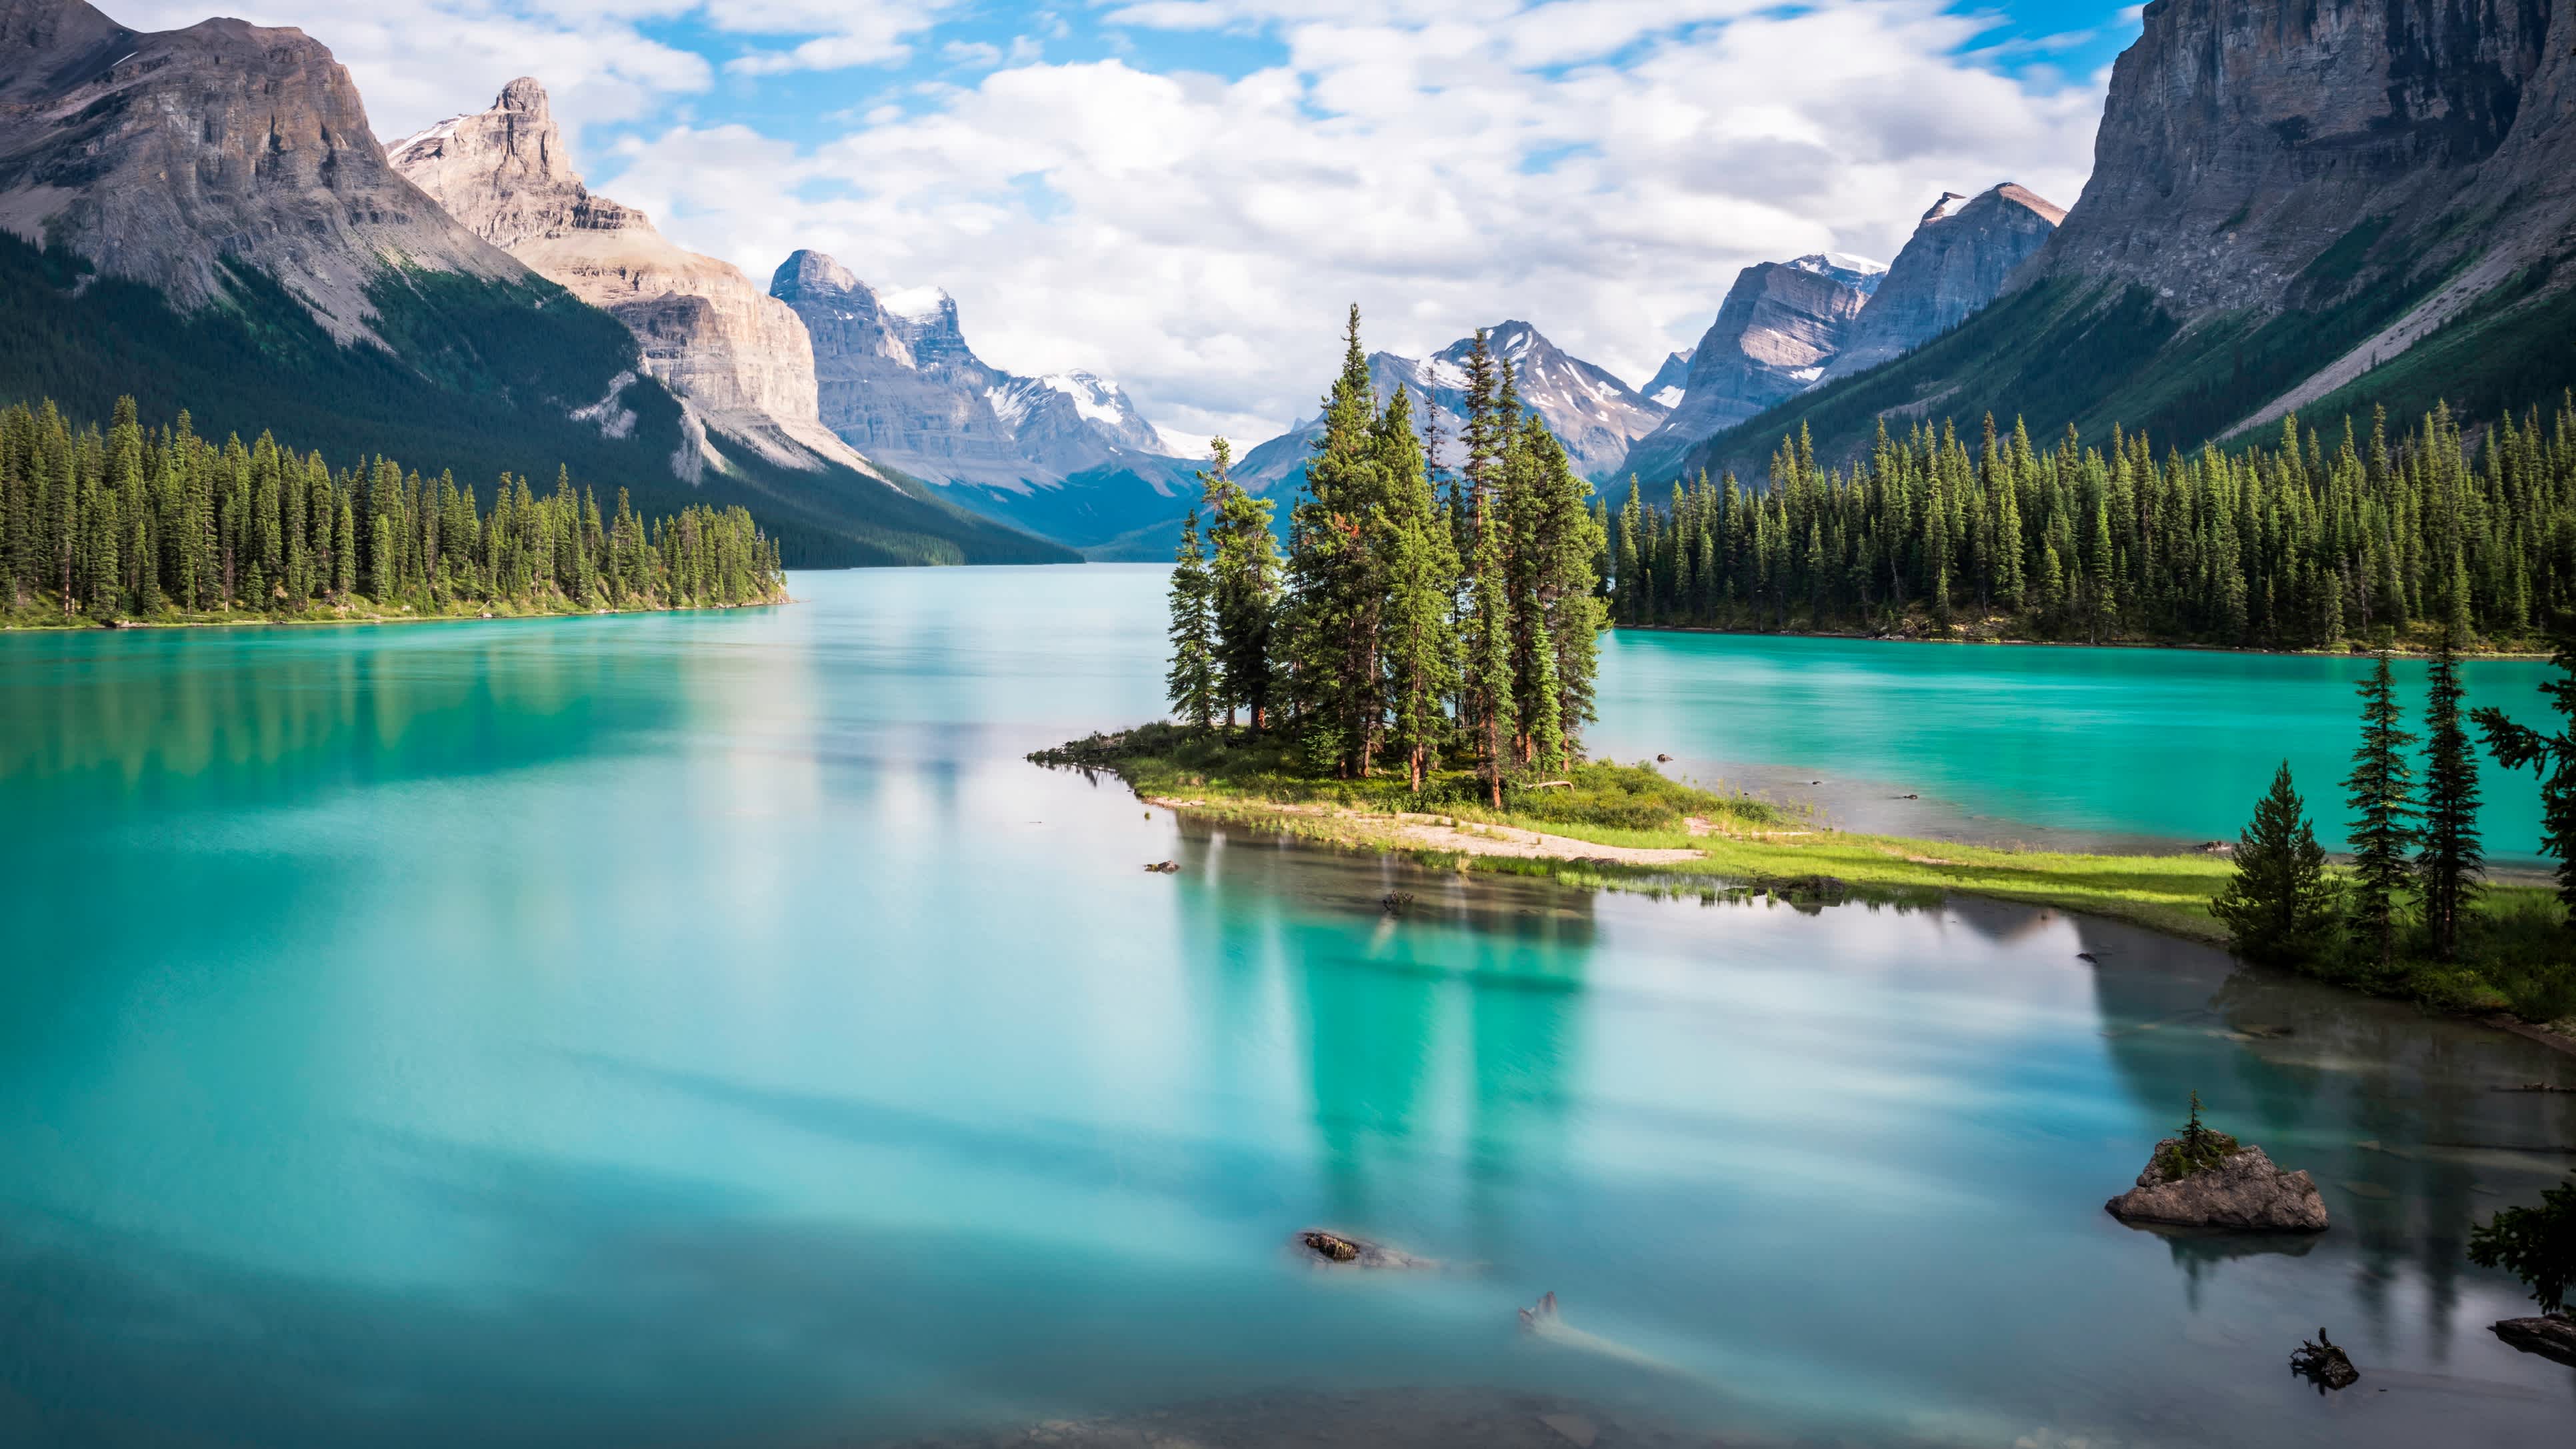 Admirez le magnifique lac Maligne dans le parc national de Jasper dans la province d'Alberta, lors de votre circuit au Canada.